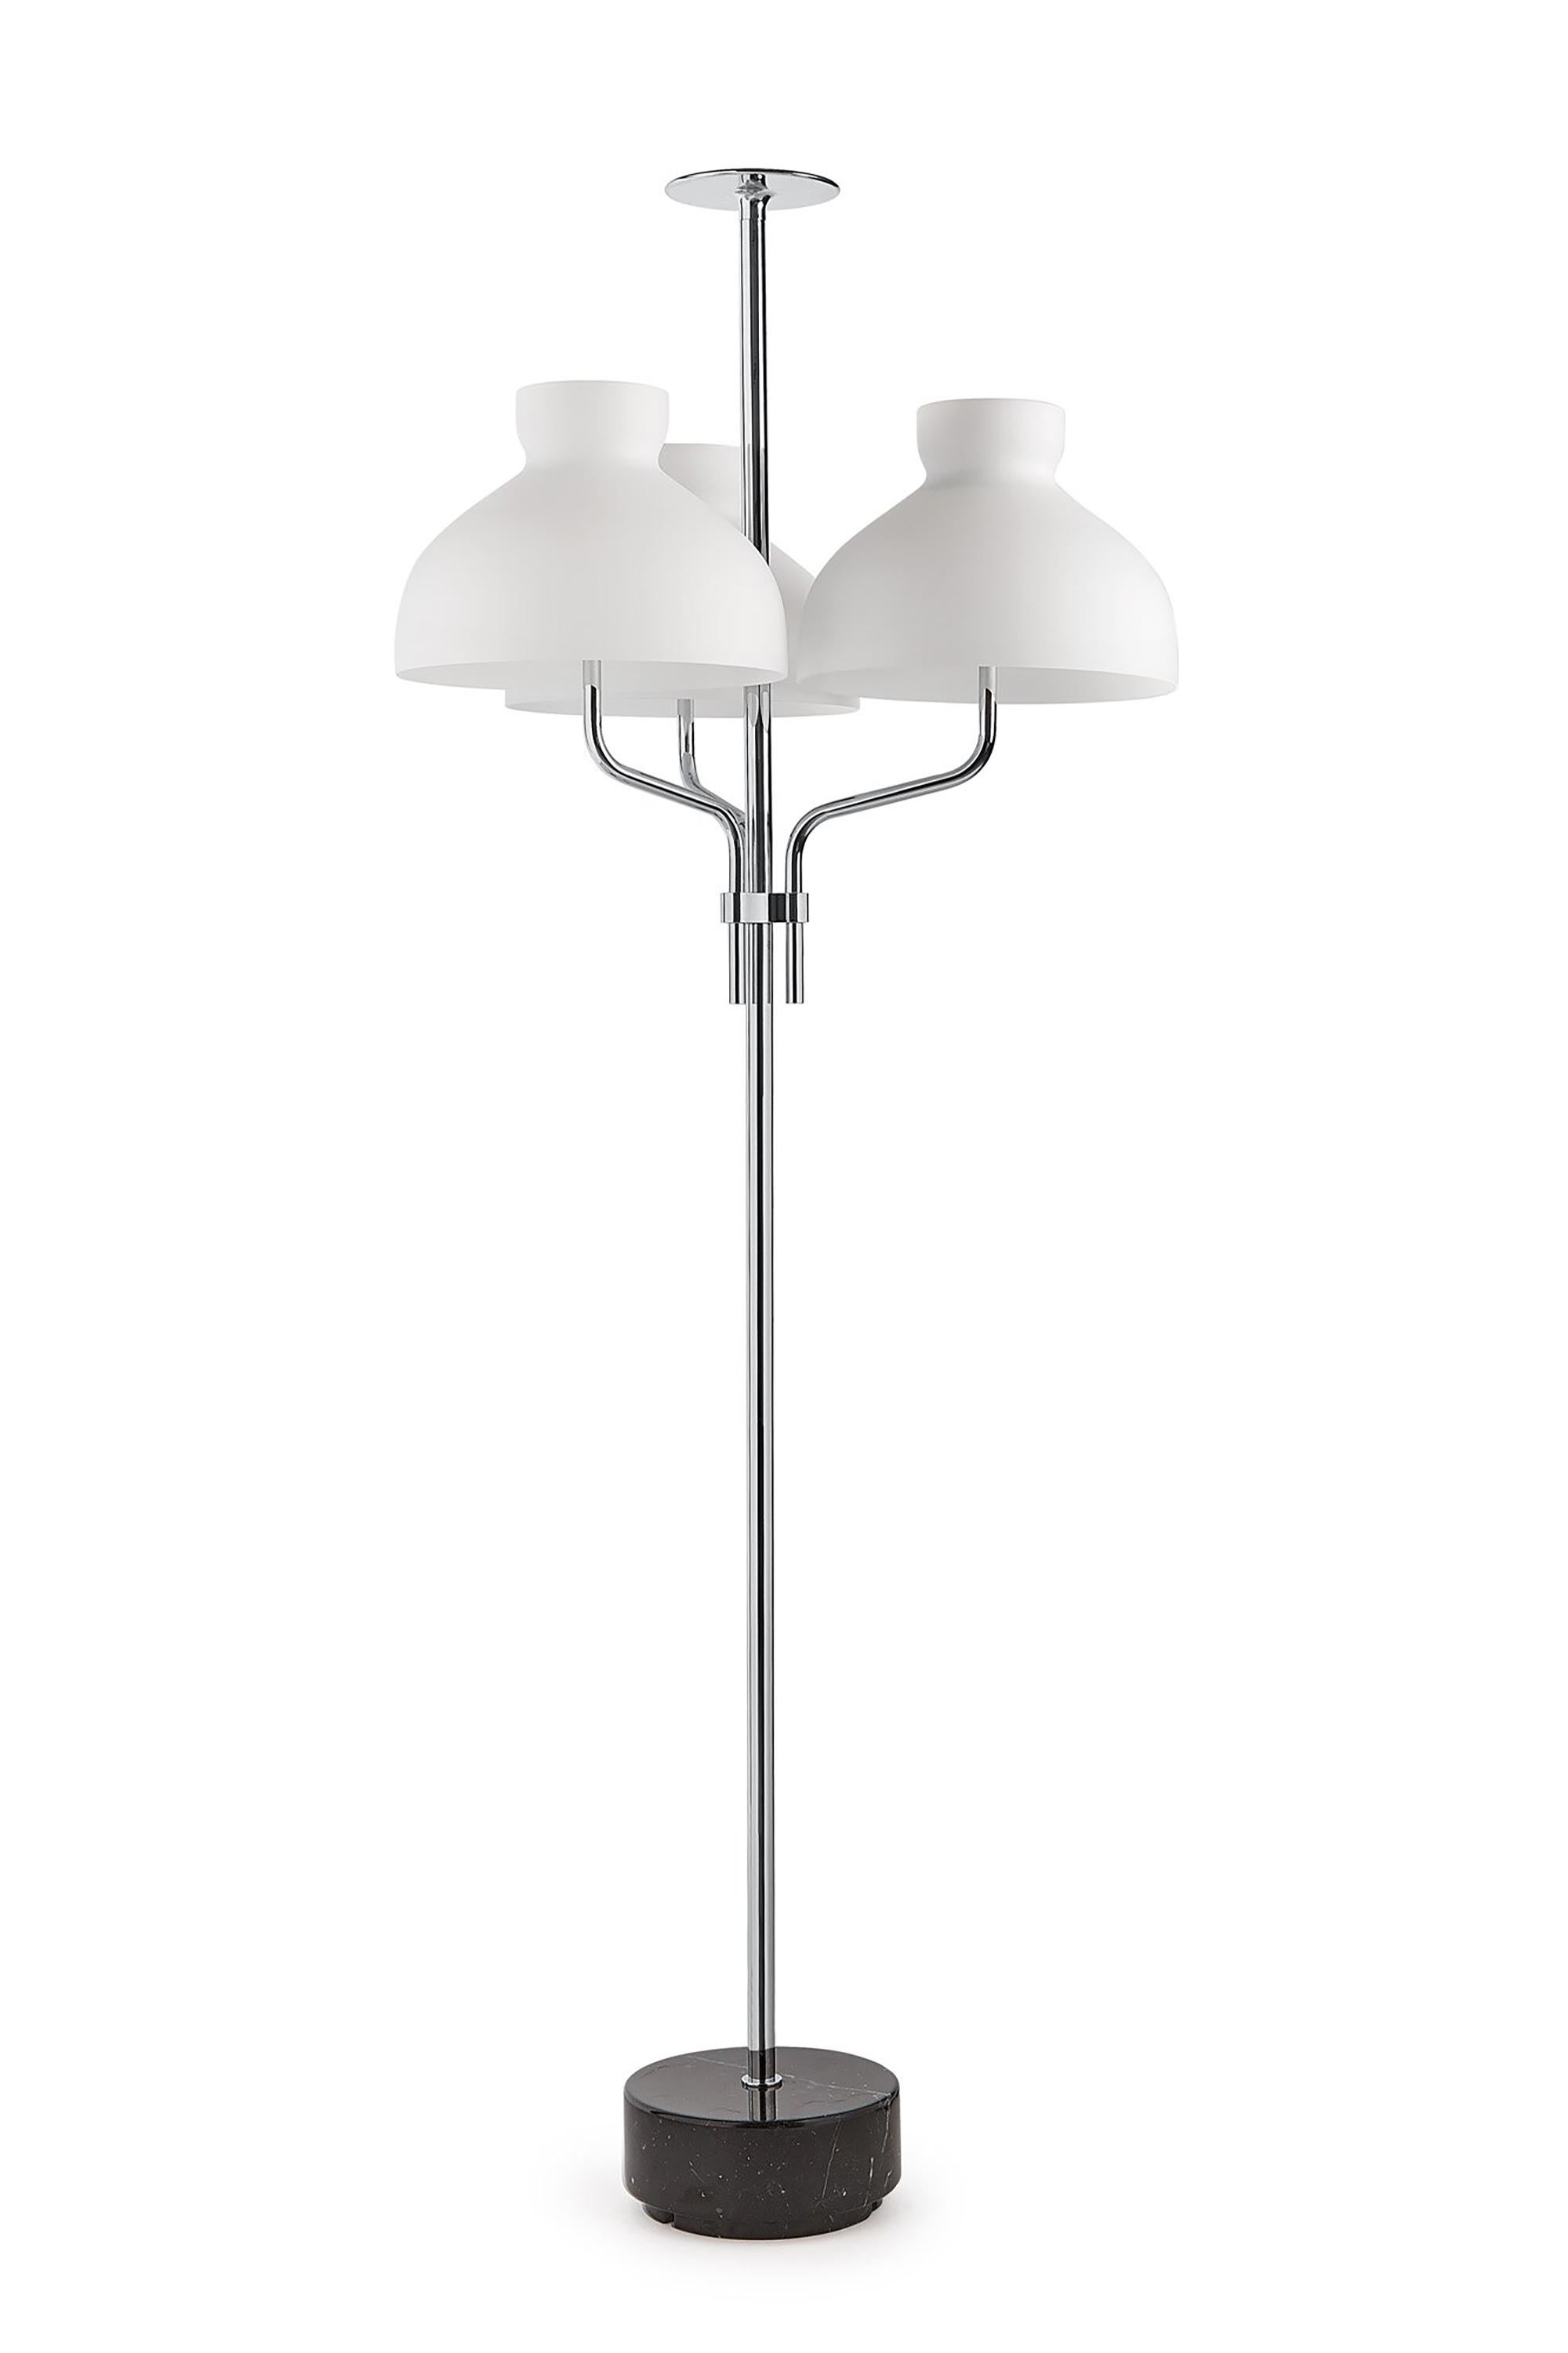 Italian Ignazio Gardella 'Arenzano Tre Fiamme' Floor Lamp in Black Marble and Chrome For Sale